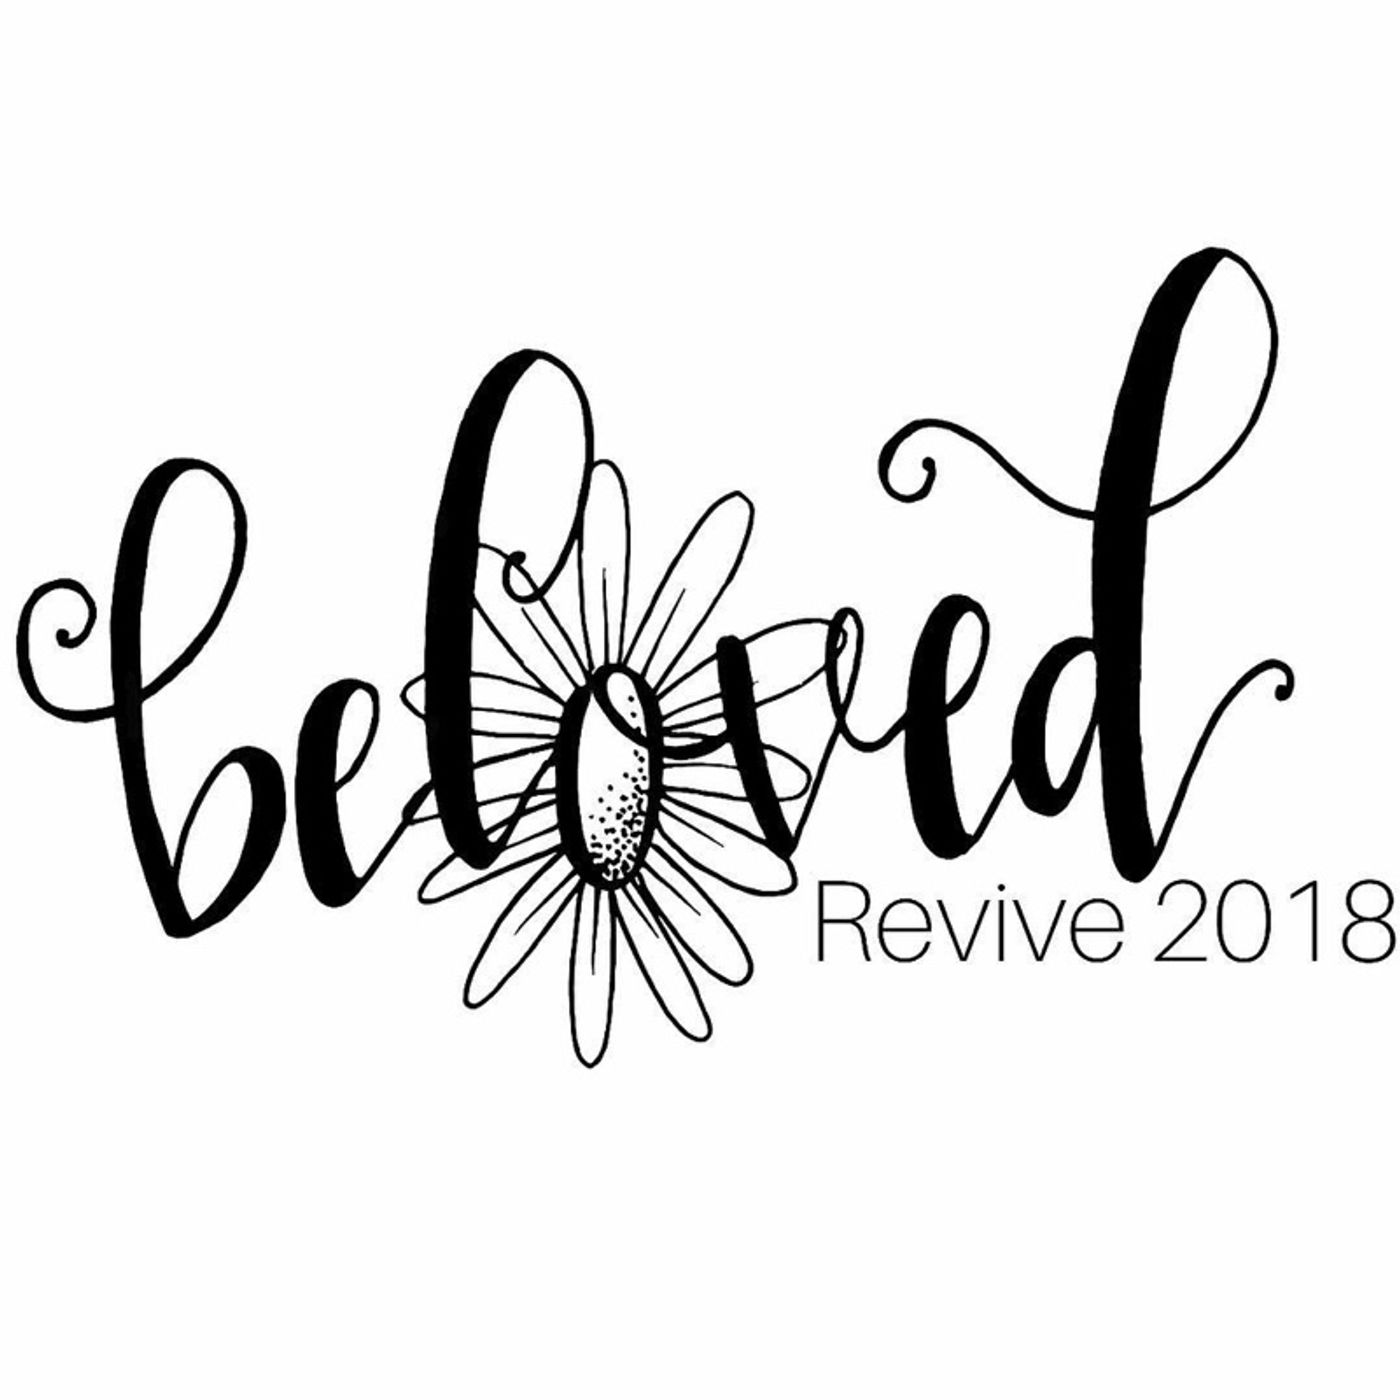 Life of the Beloved - Broken